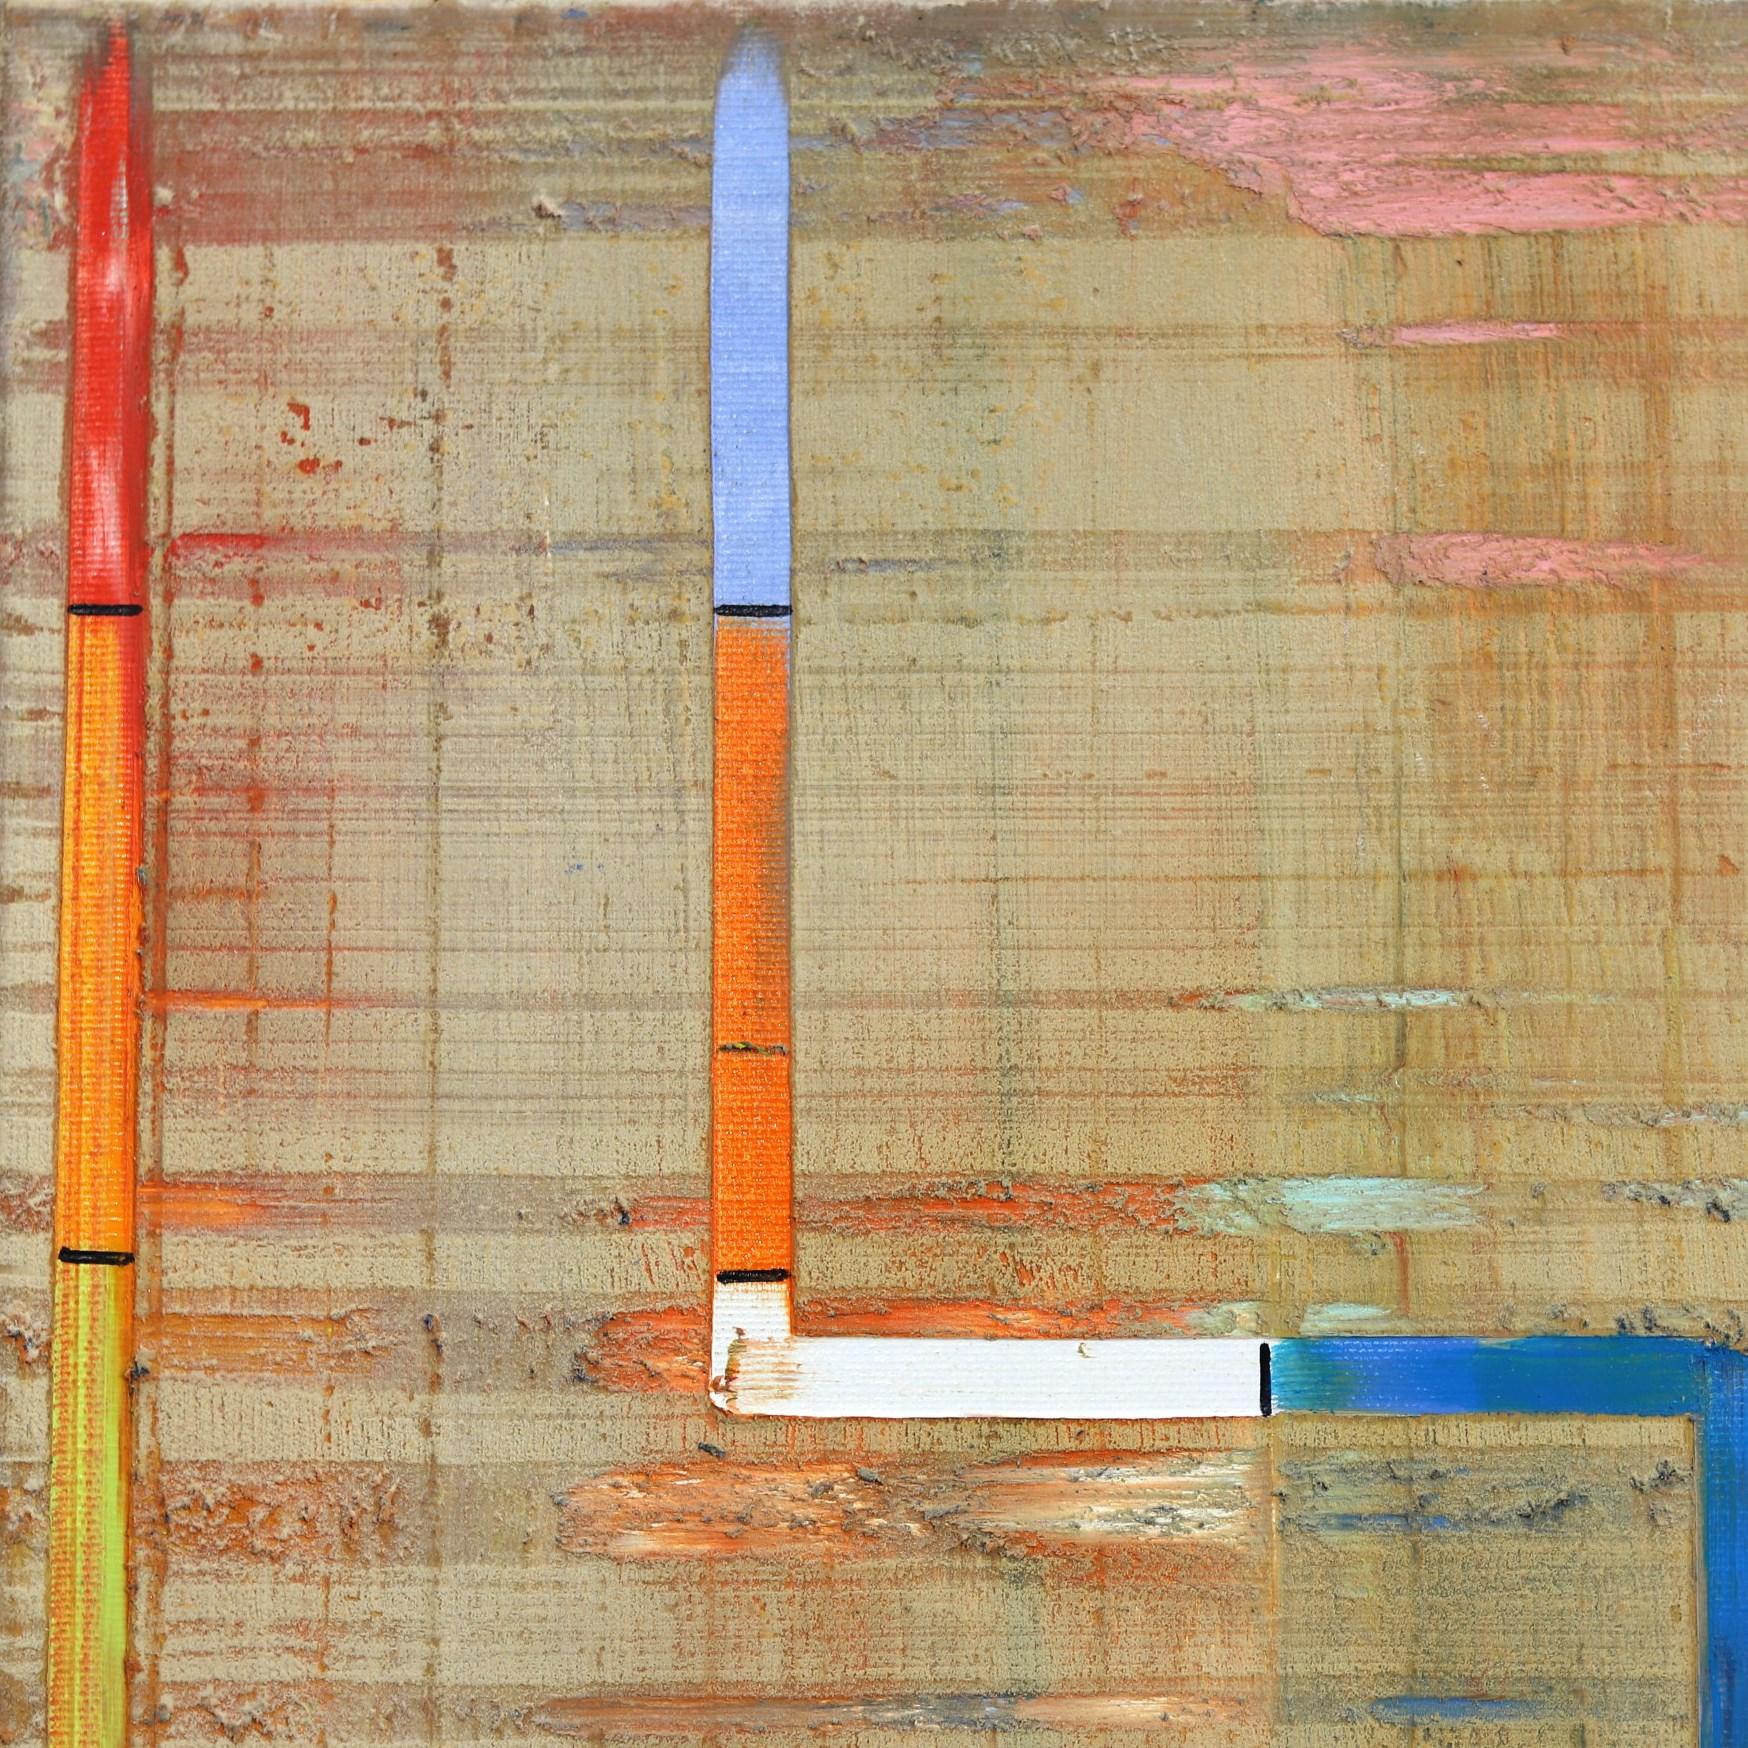 Petra Rös-Nickels originelle Gemälde vereinen verspielte Formen, leuchtende Farben und architektonische Kompositionen in Öl und Mischtechnik auf Leinwand. Ihre zeitgenössischen Kunstwerke enthalten reiche Texturen und Muster, die sich auf das